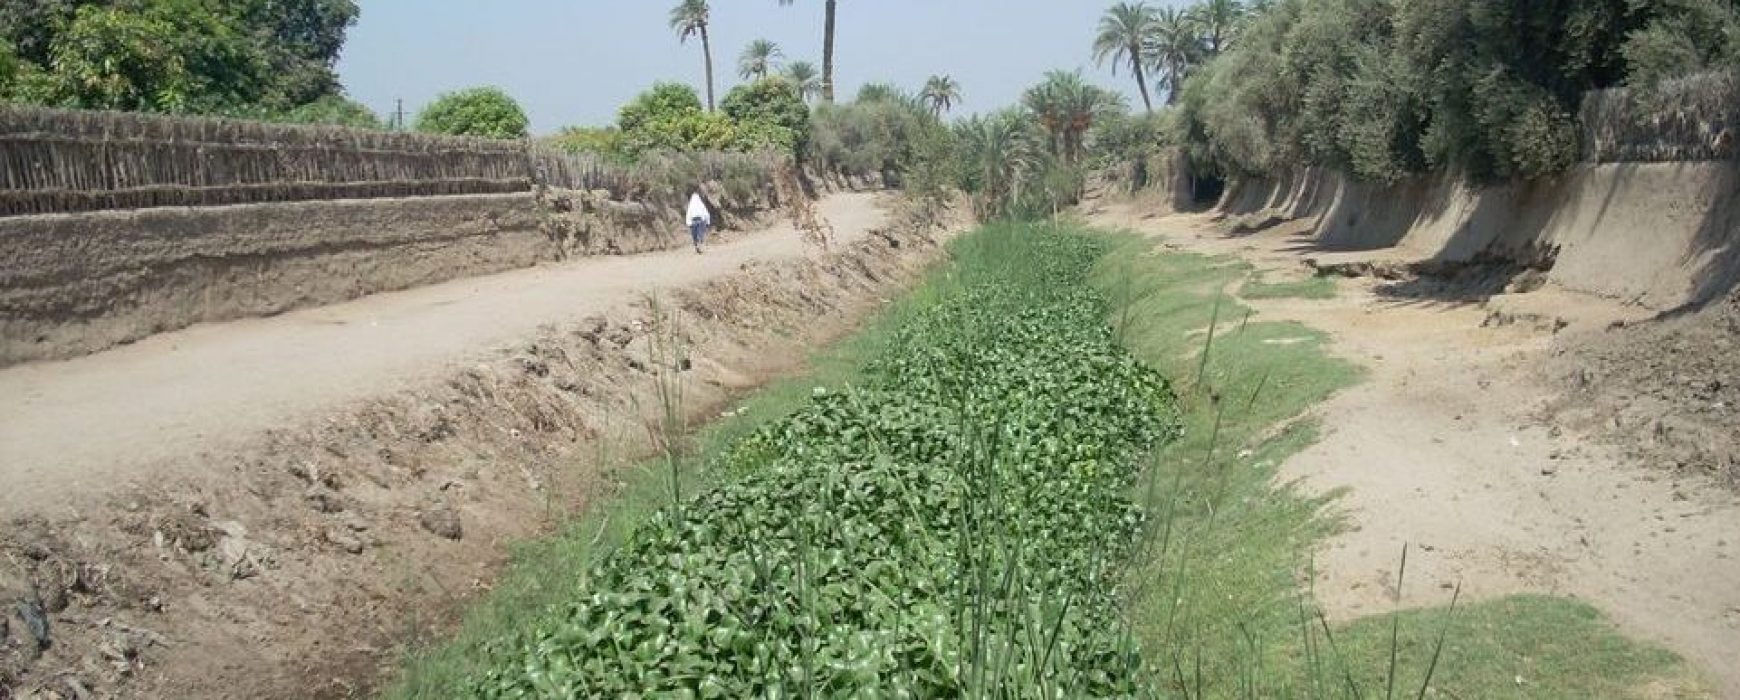 Évaluation de l’évolution de l’invasion de la jacinthe d’eau, ÉGYPTE/SOUDAN